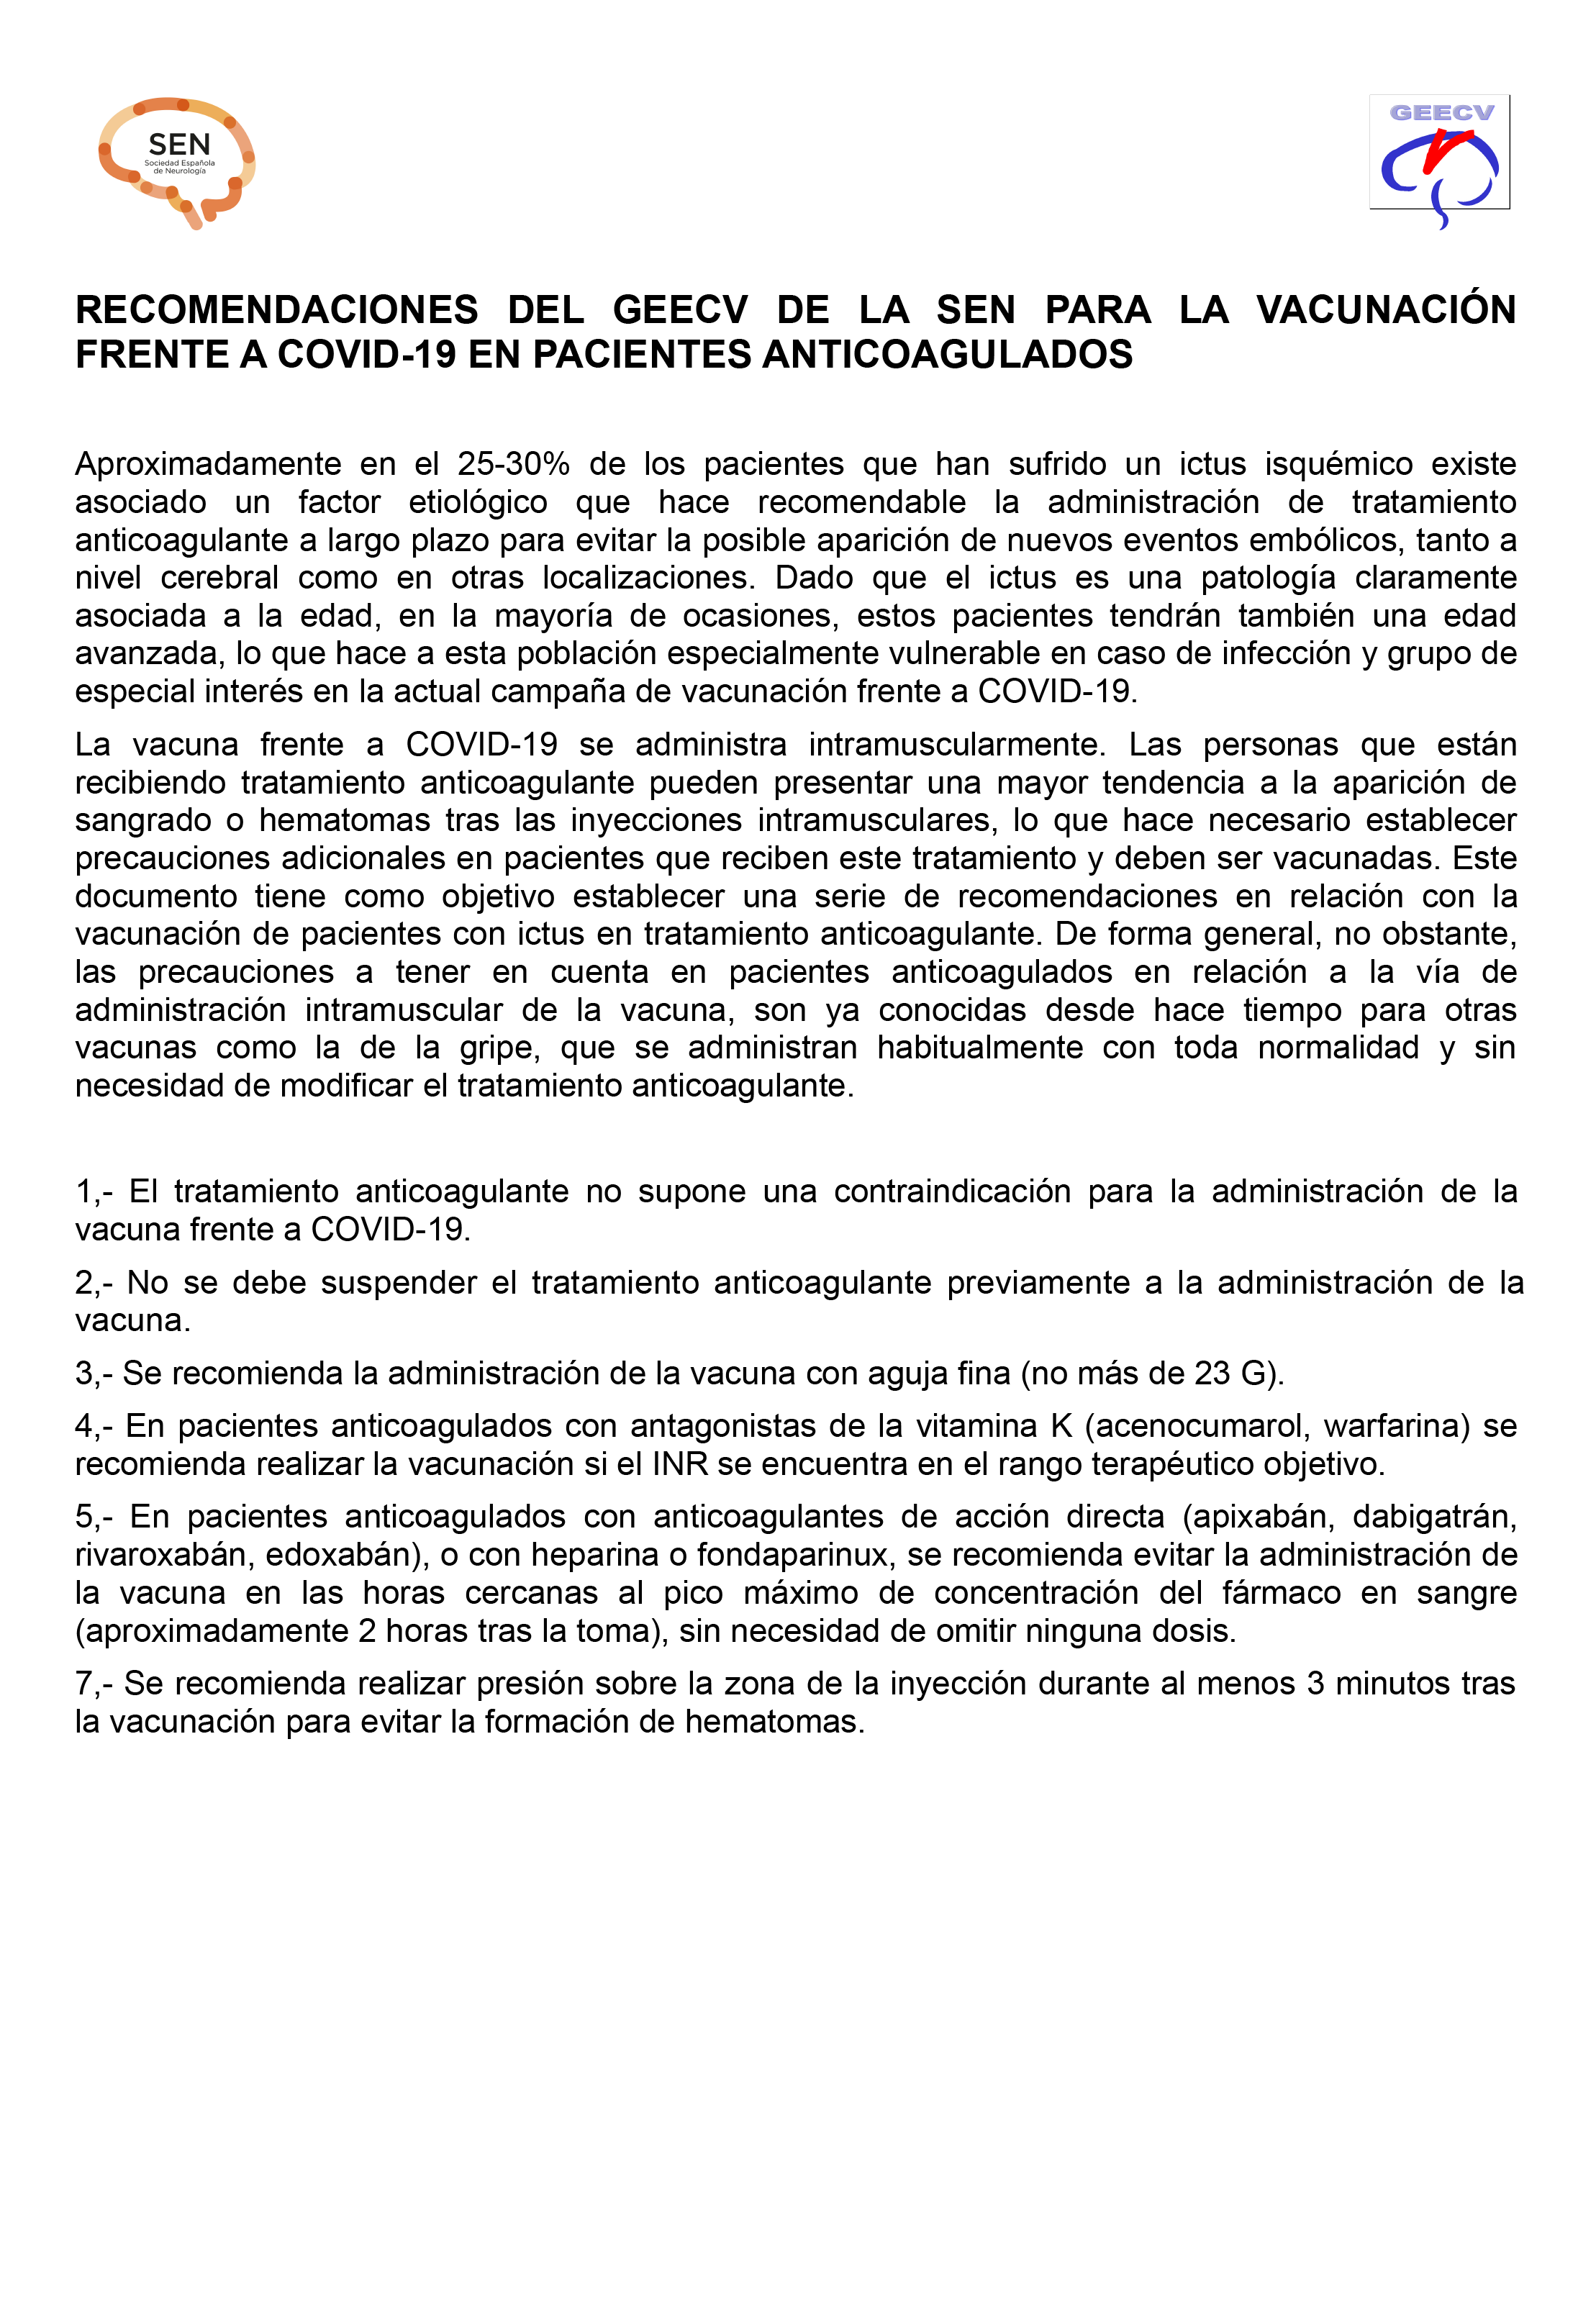 RECOMENDACIONES DEL GEECV DE LA SEN PARA LA VACUNACIÓN FRENTE A COVID-19 EN PACIENTES ANTICOAGULADOS